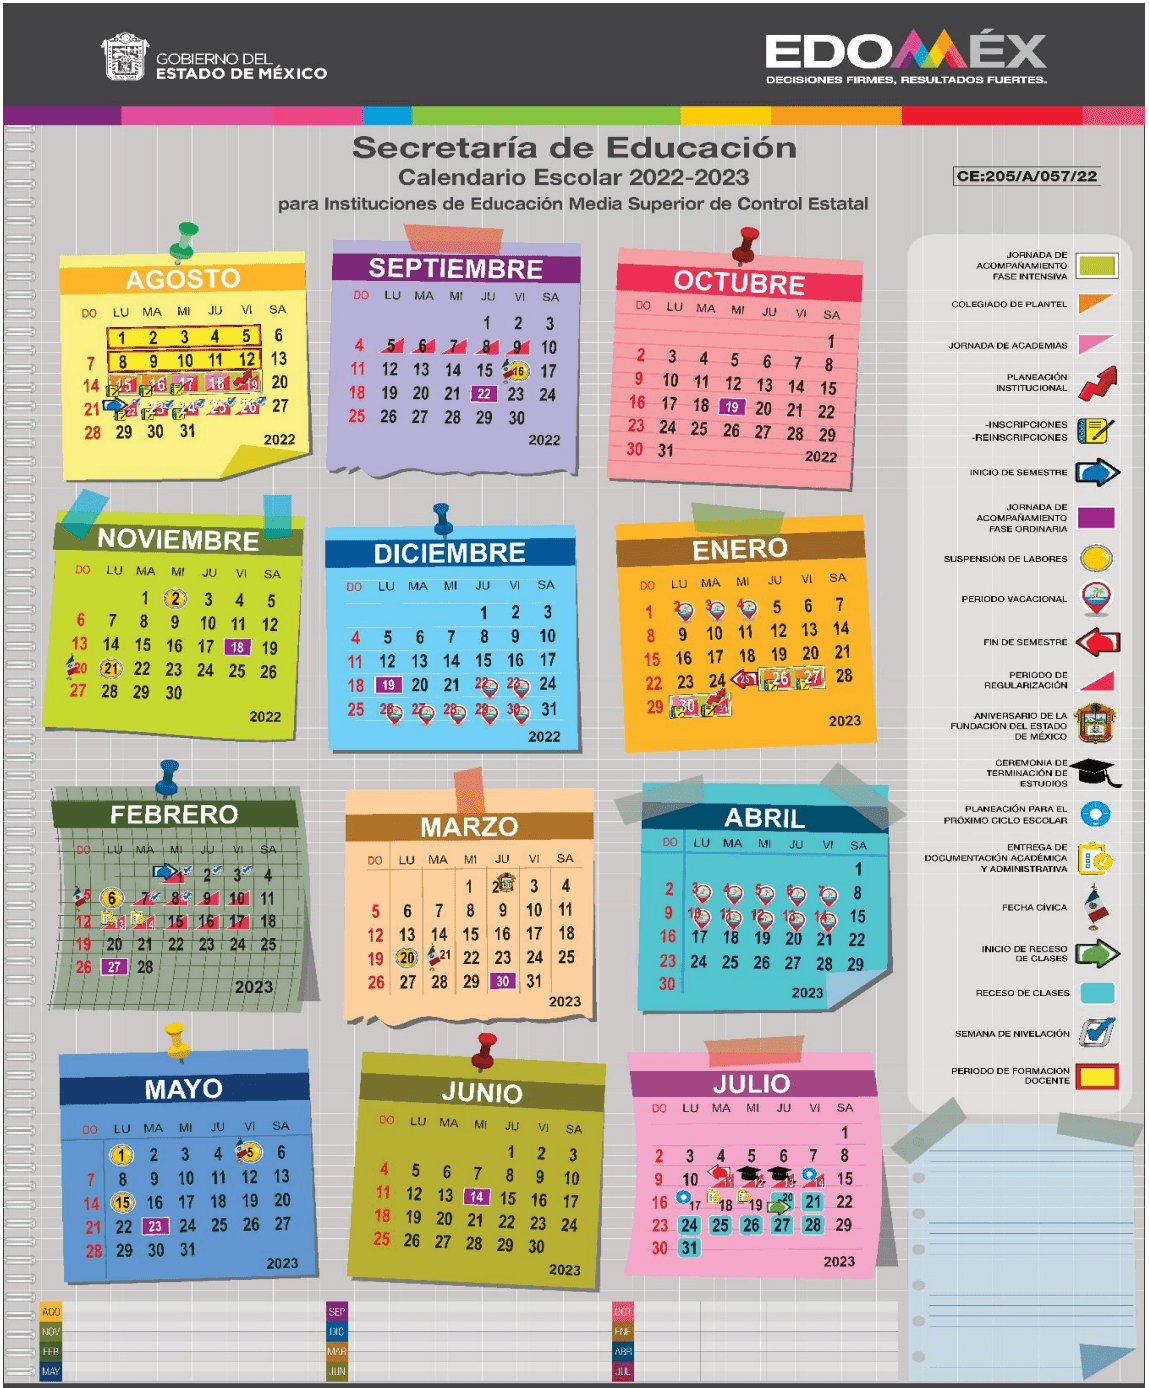 Conoce El Calendario Escolar 2022 2023 De La Sep Somos News Mobile